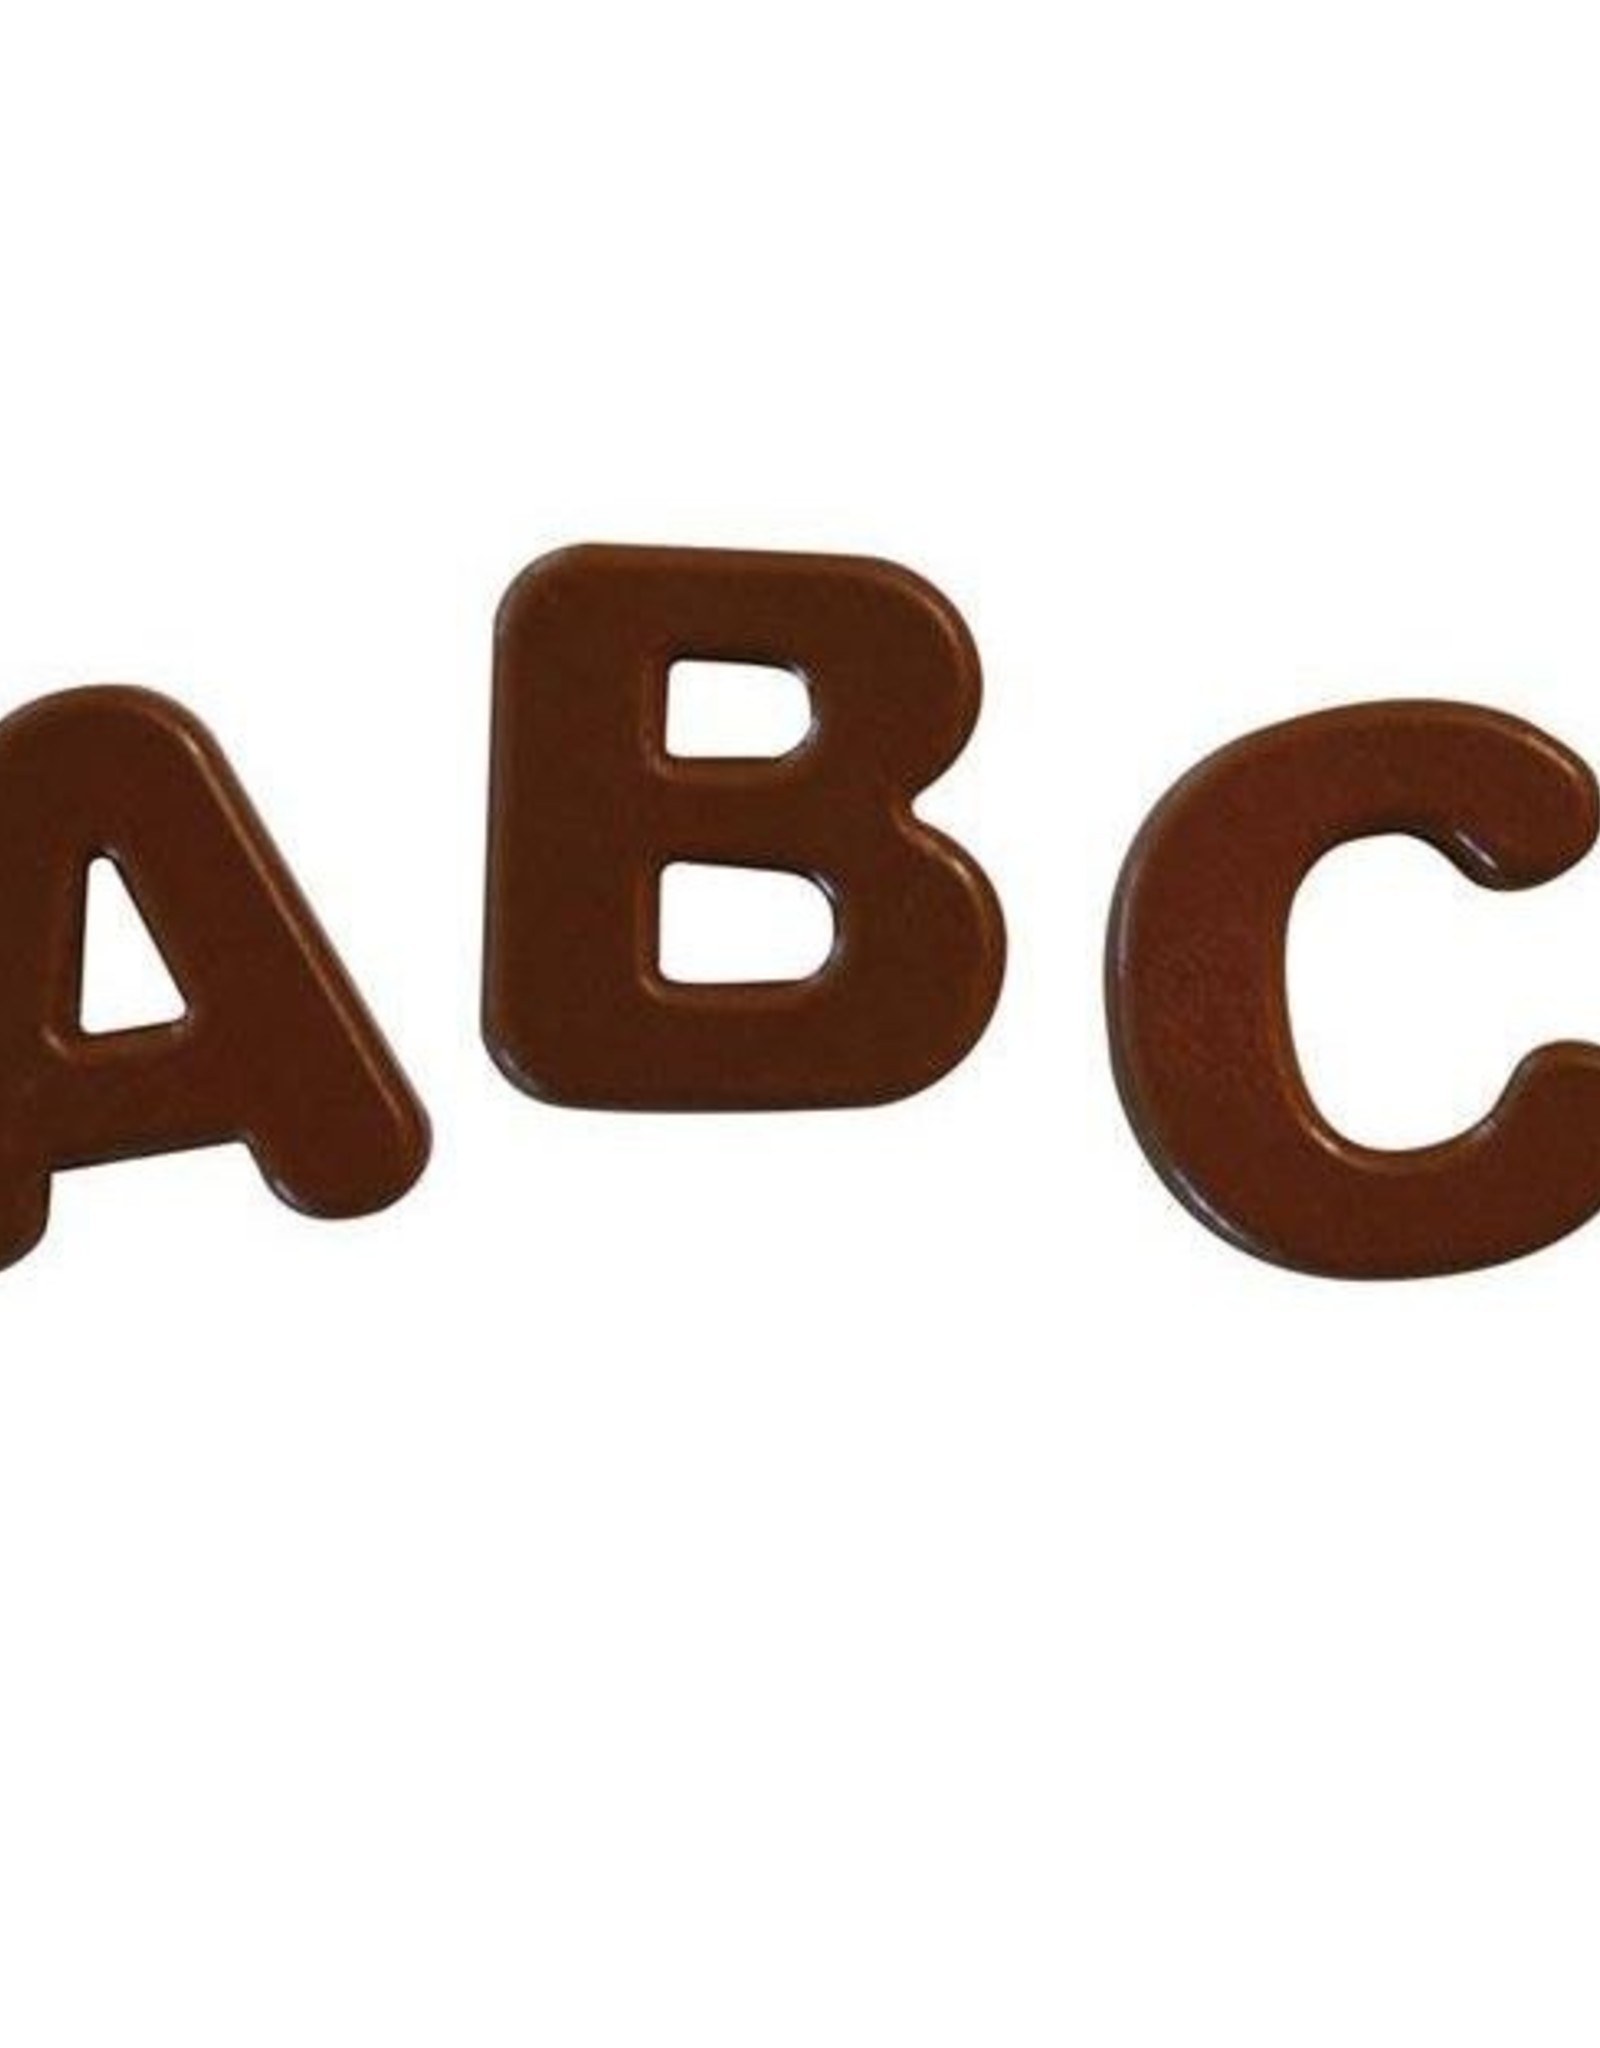 Silikomart Silikomart Chocolate Mould Choco ABC